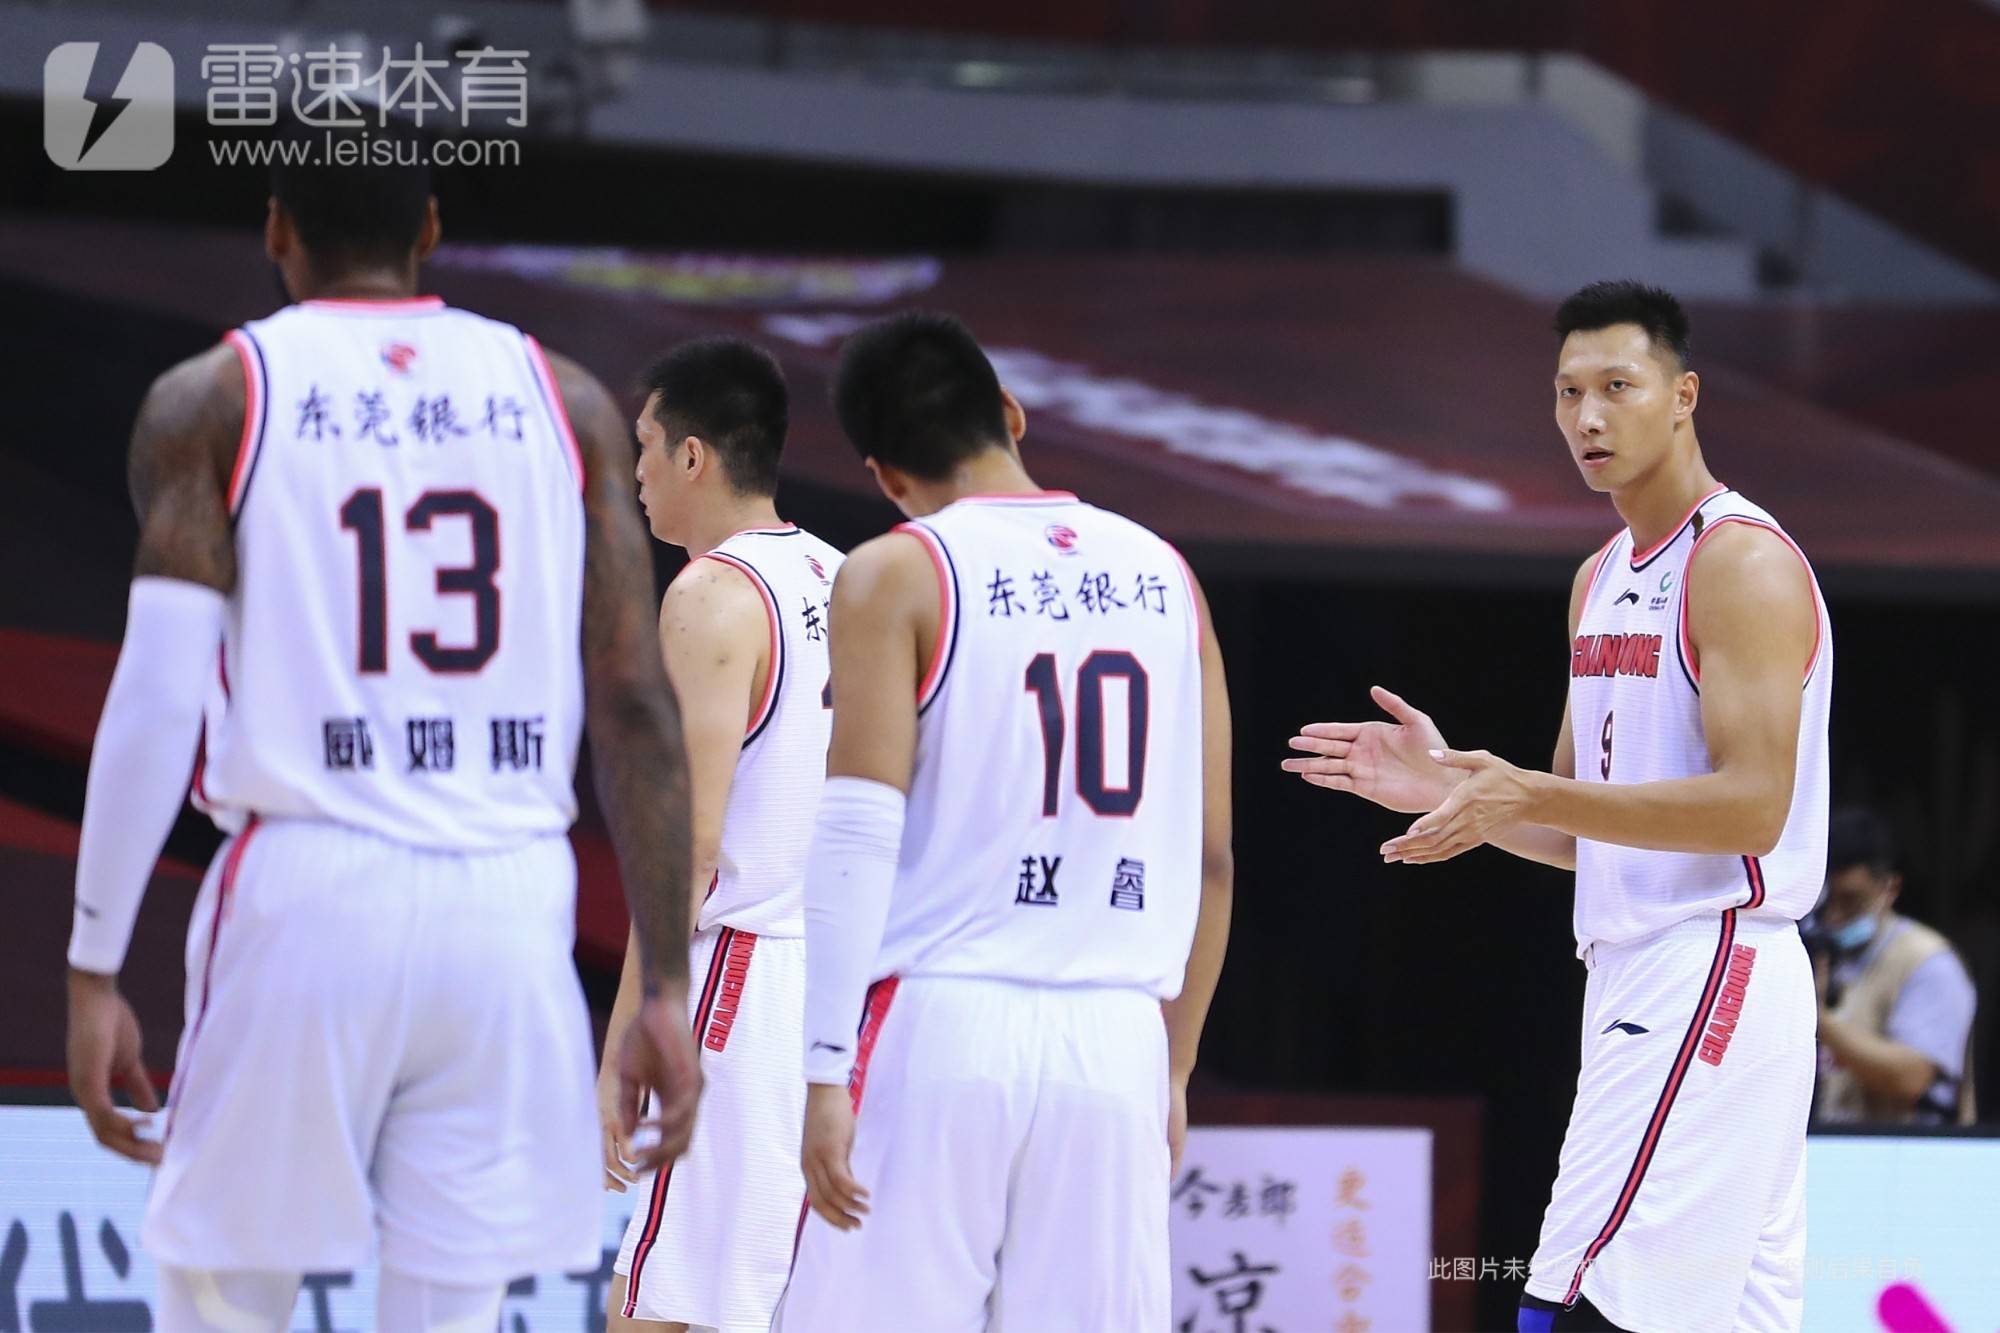 không ngừng!XU JIE SCBA Chung kết 24 điểm và 11 rebound để giành chức vô địch Li Yanzhe một ngày trận đấu đôi 14+13